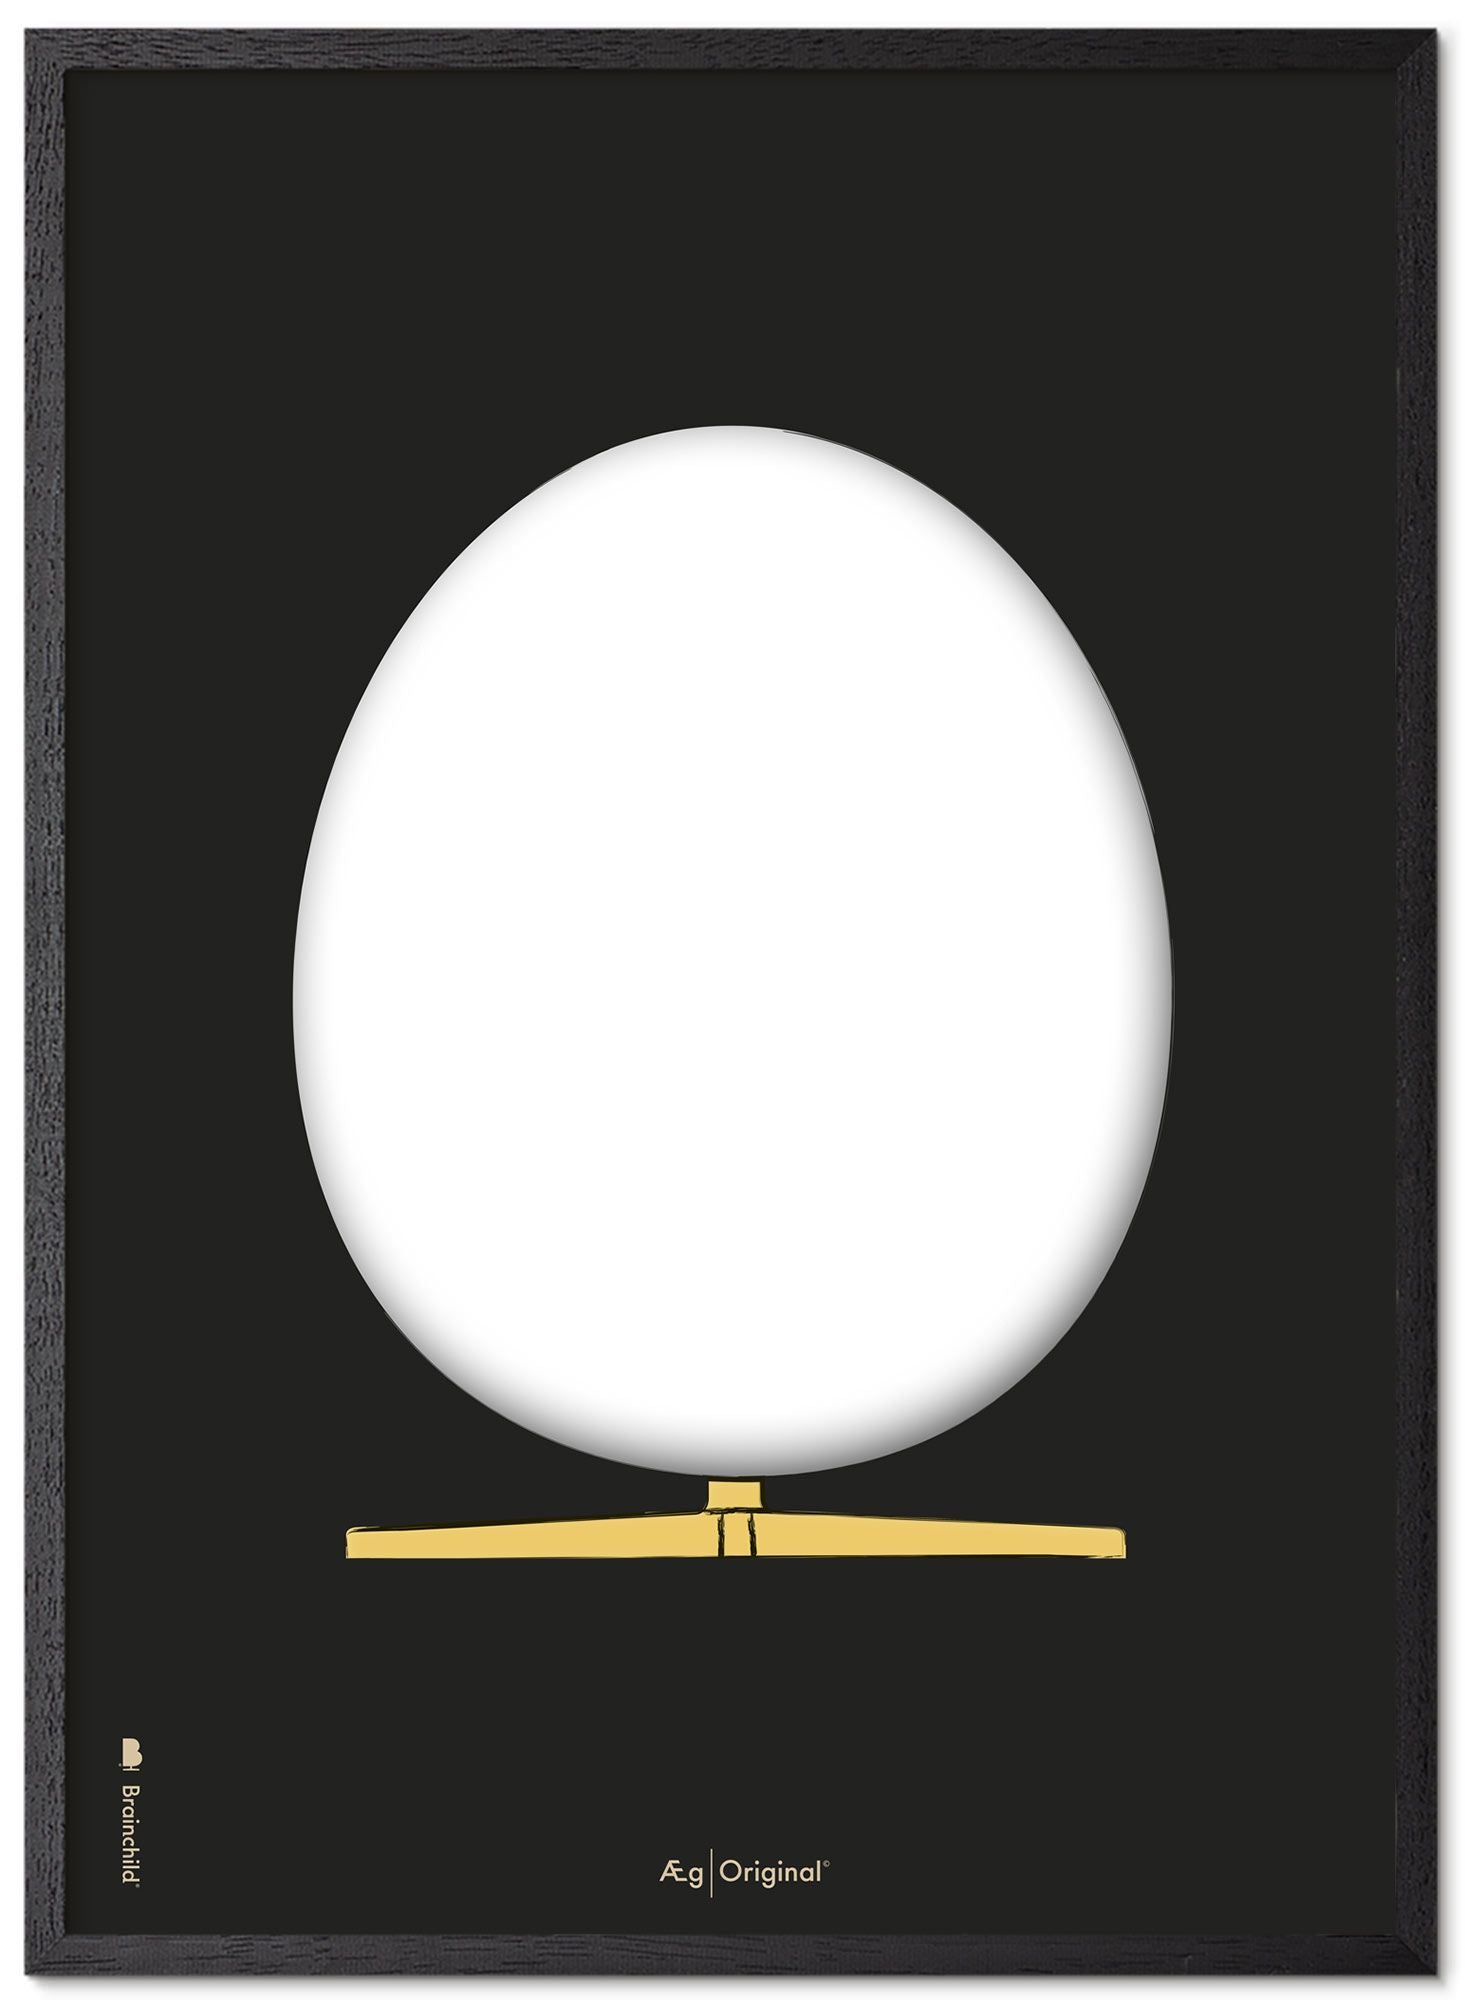 Prepare el marco de póster de boceto de diseño de huevo hecho de madera lacada negra de 70x100 cm, fondo negro